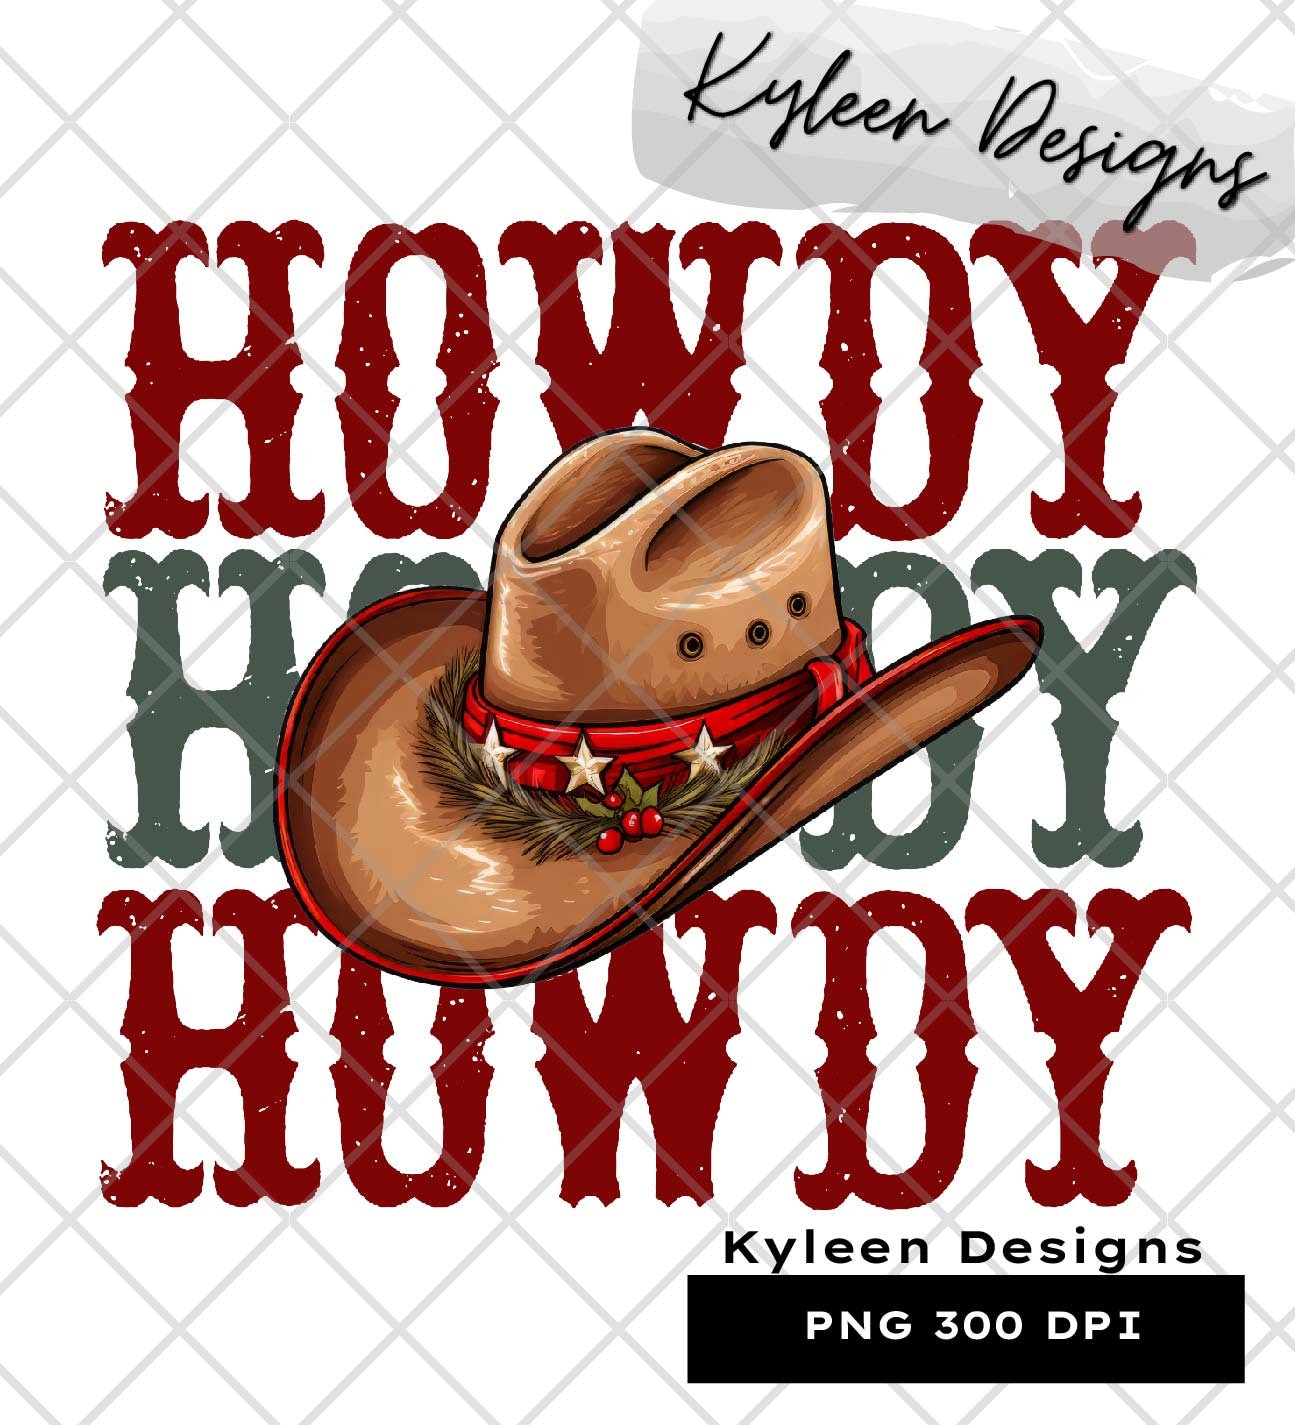 Cowboy Christmas Howdy Hat High res 300 dpi PNG digital file for sublimation, DTF, DTG, printable vinyl etc